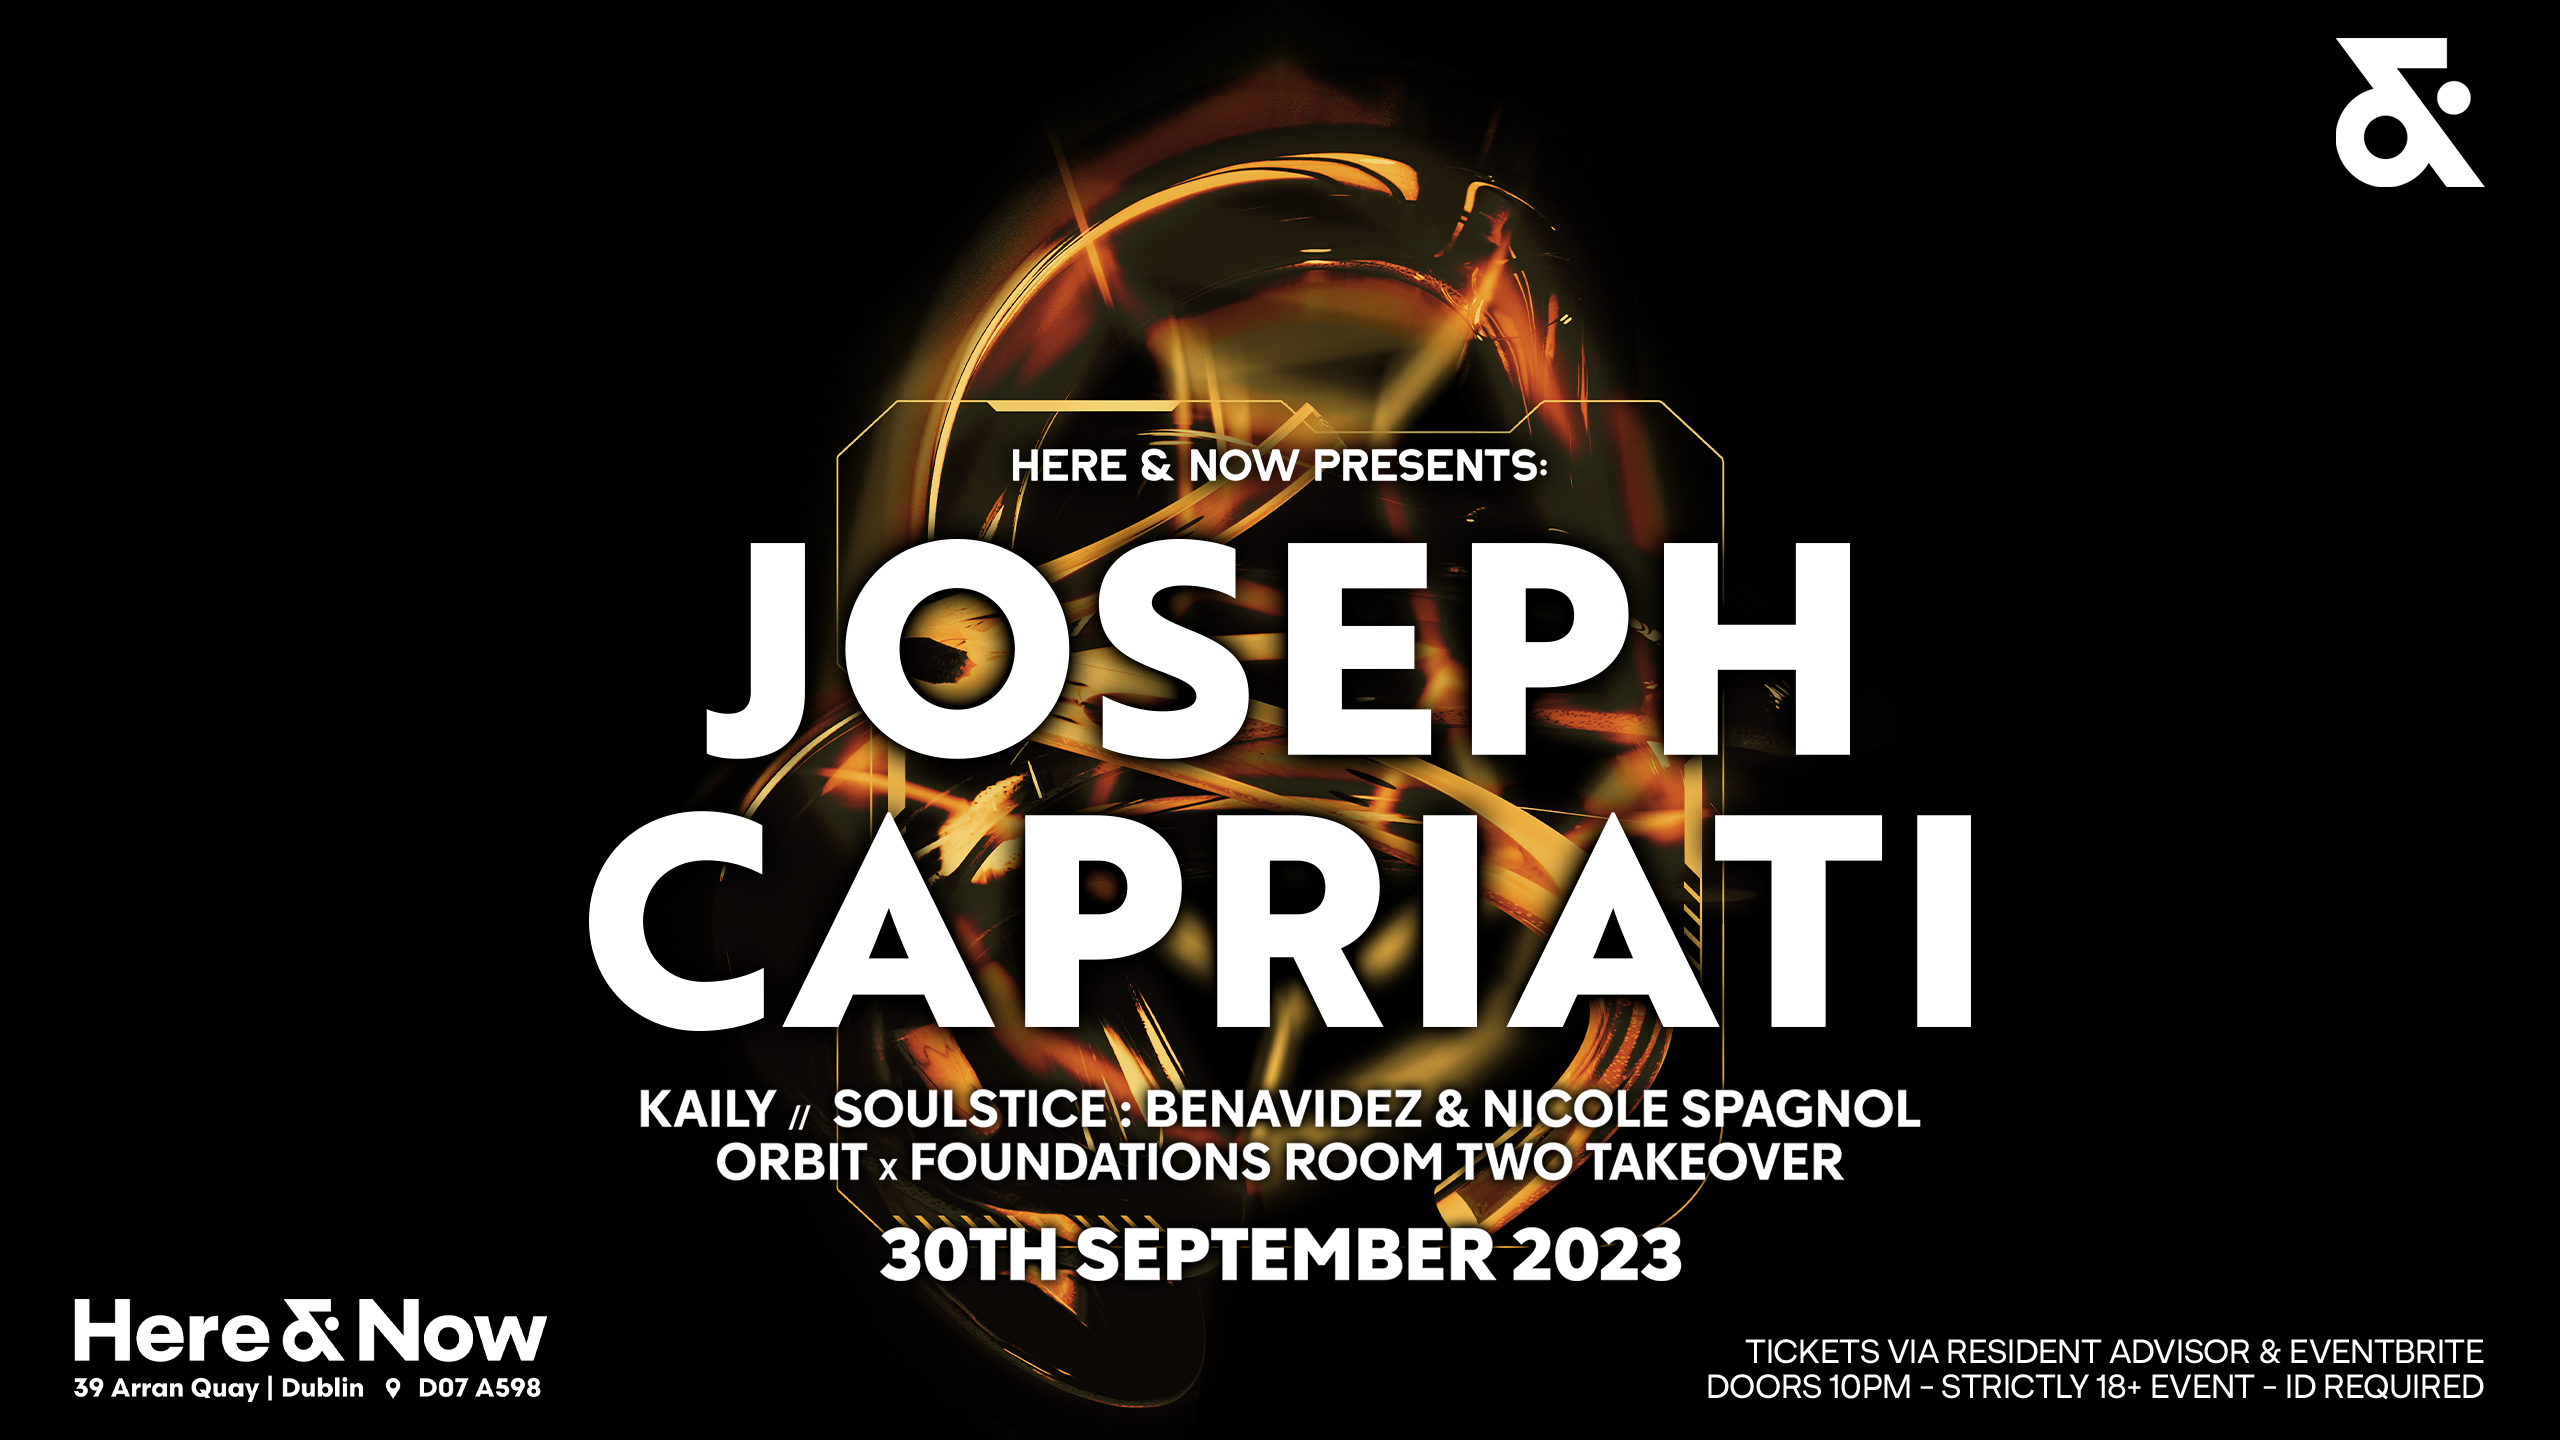 Joseph Capriati - フライヤー表